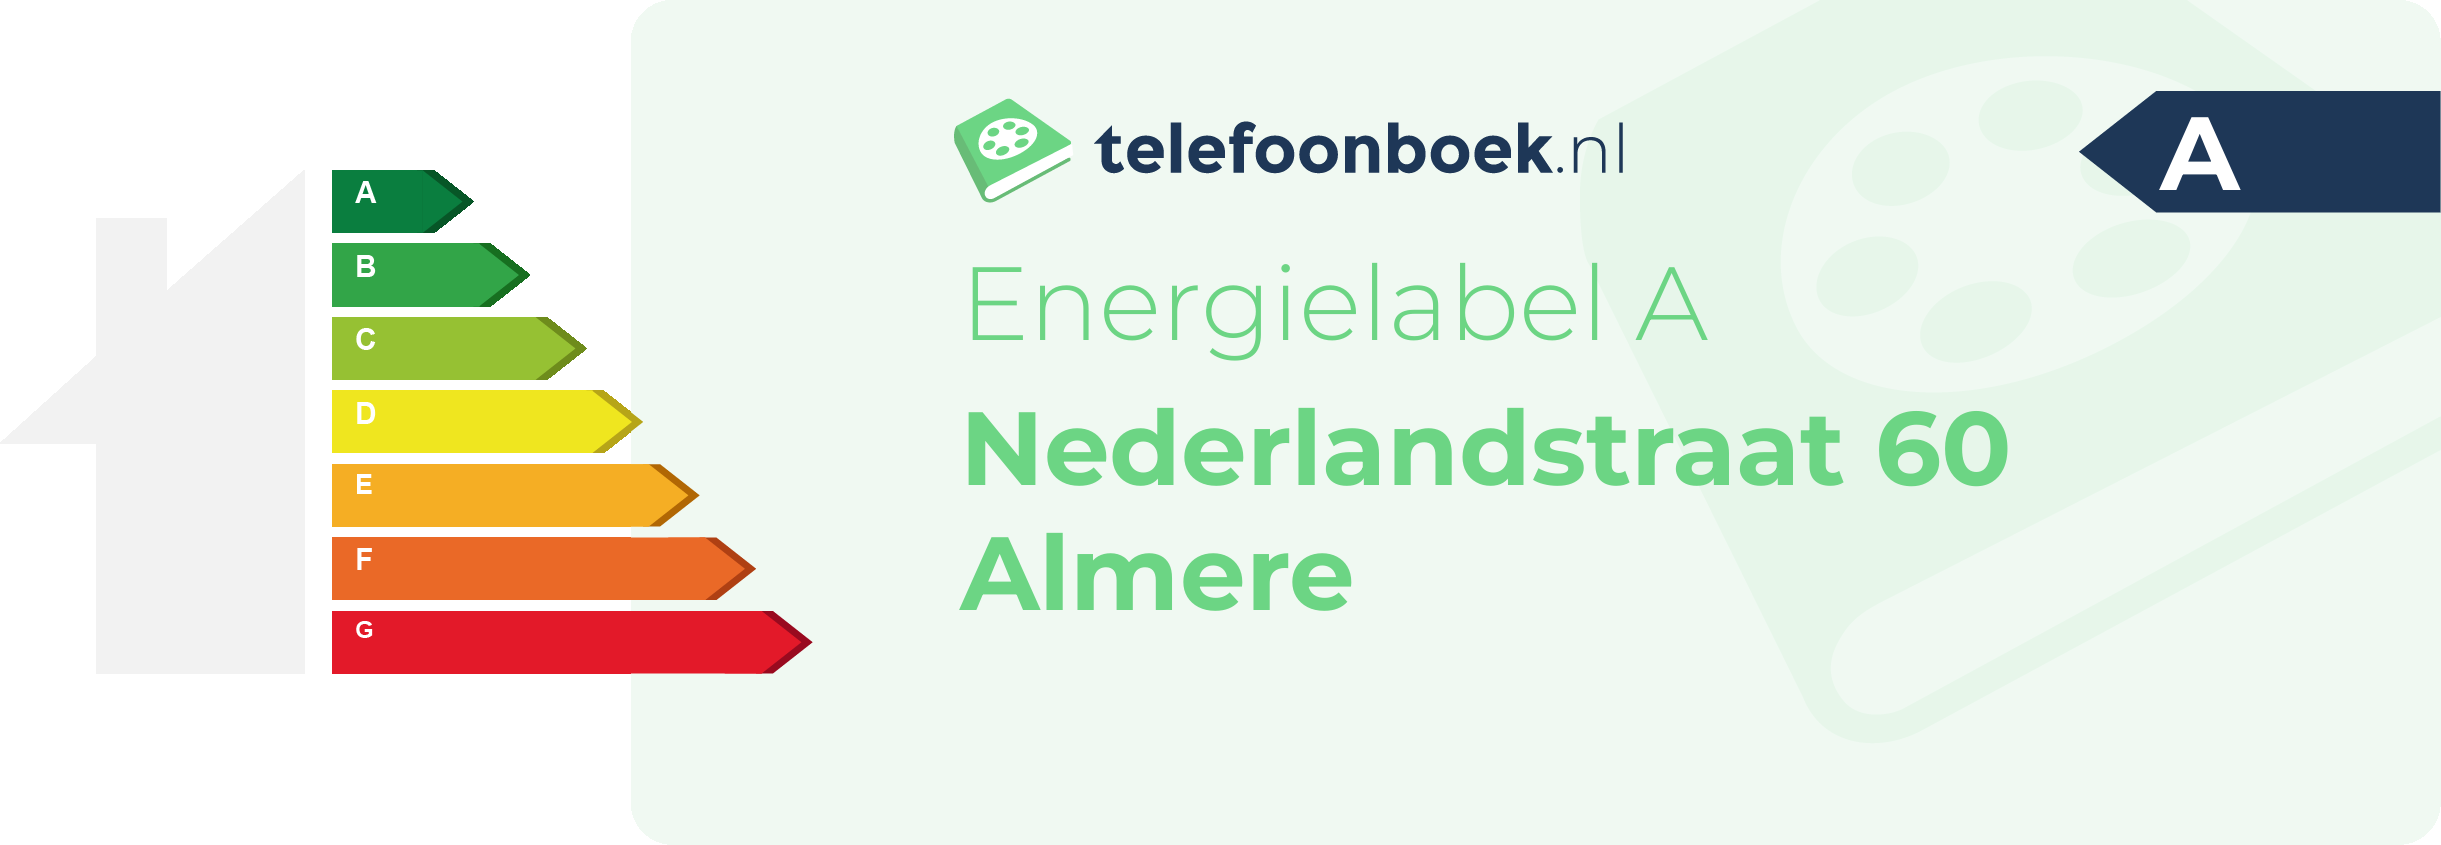 Energielabel Nederlandstraat 60 Almere